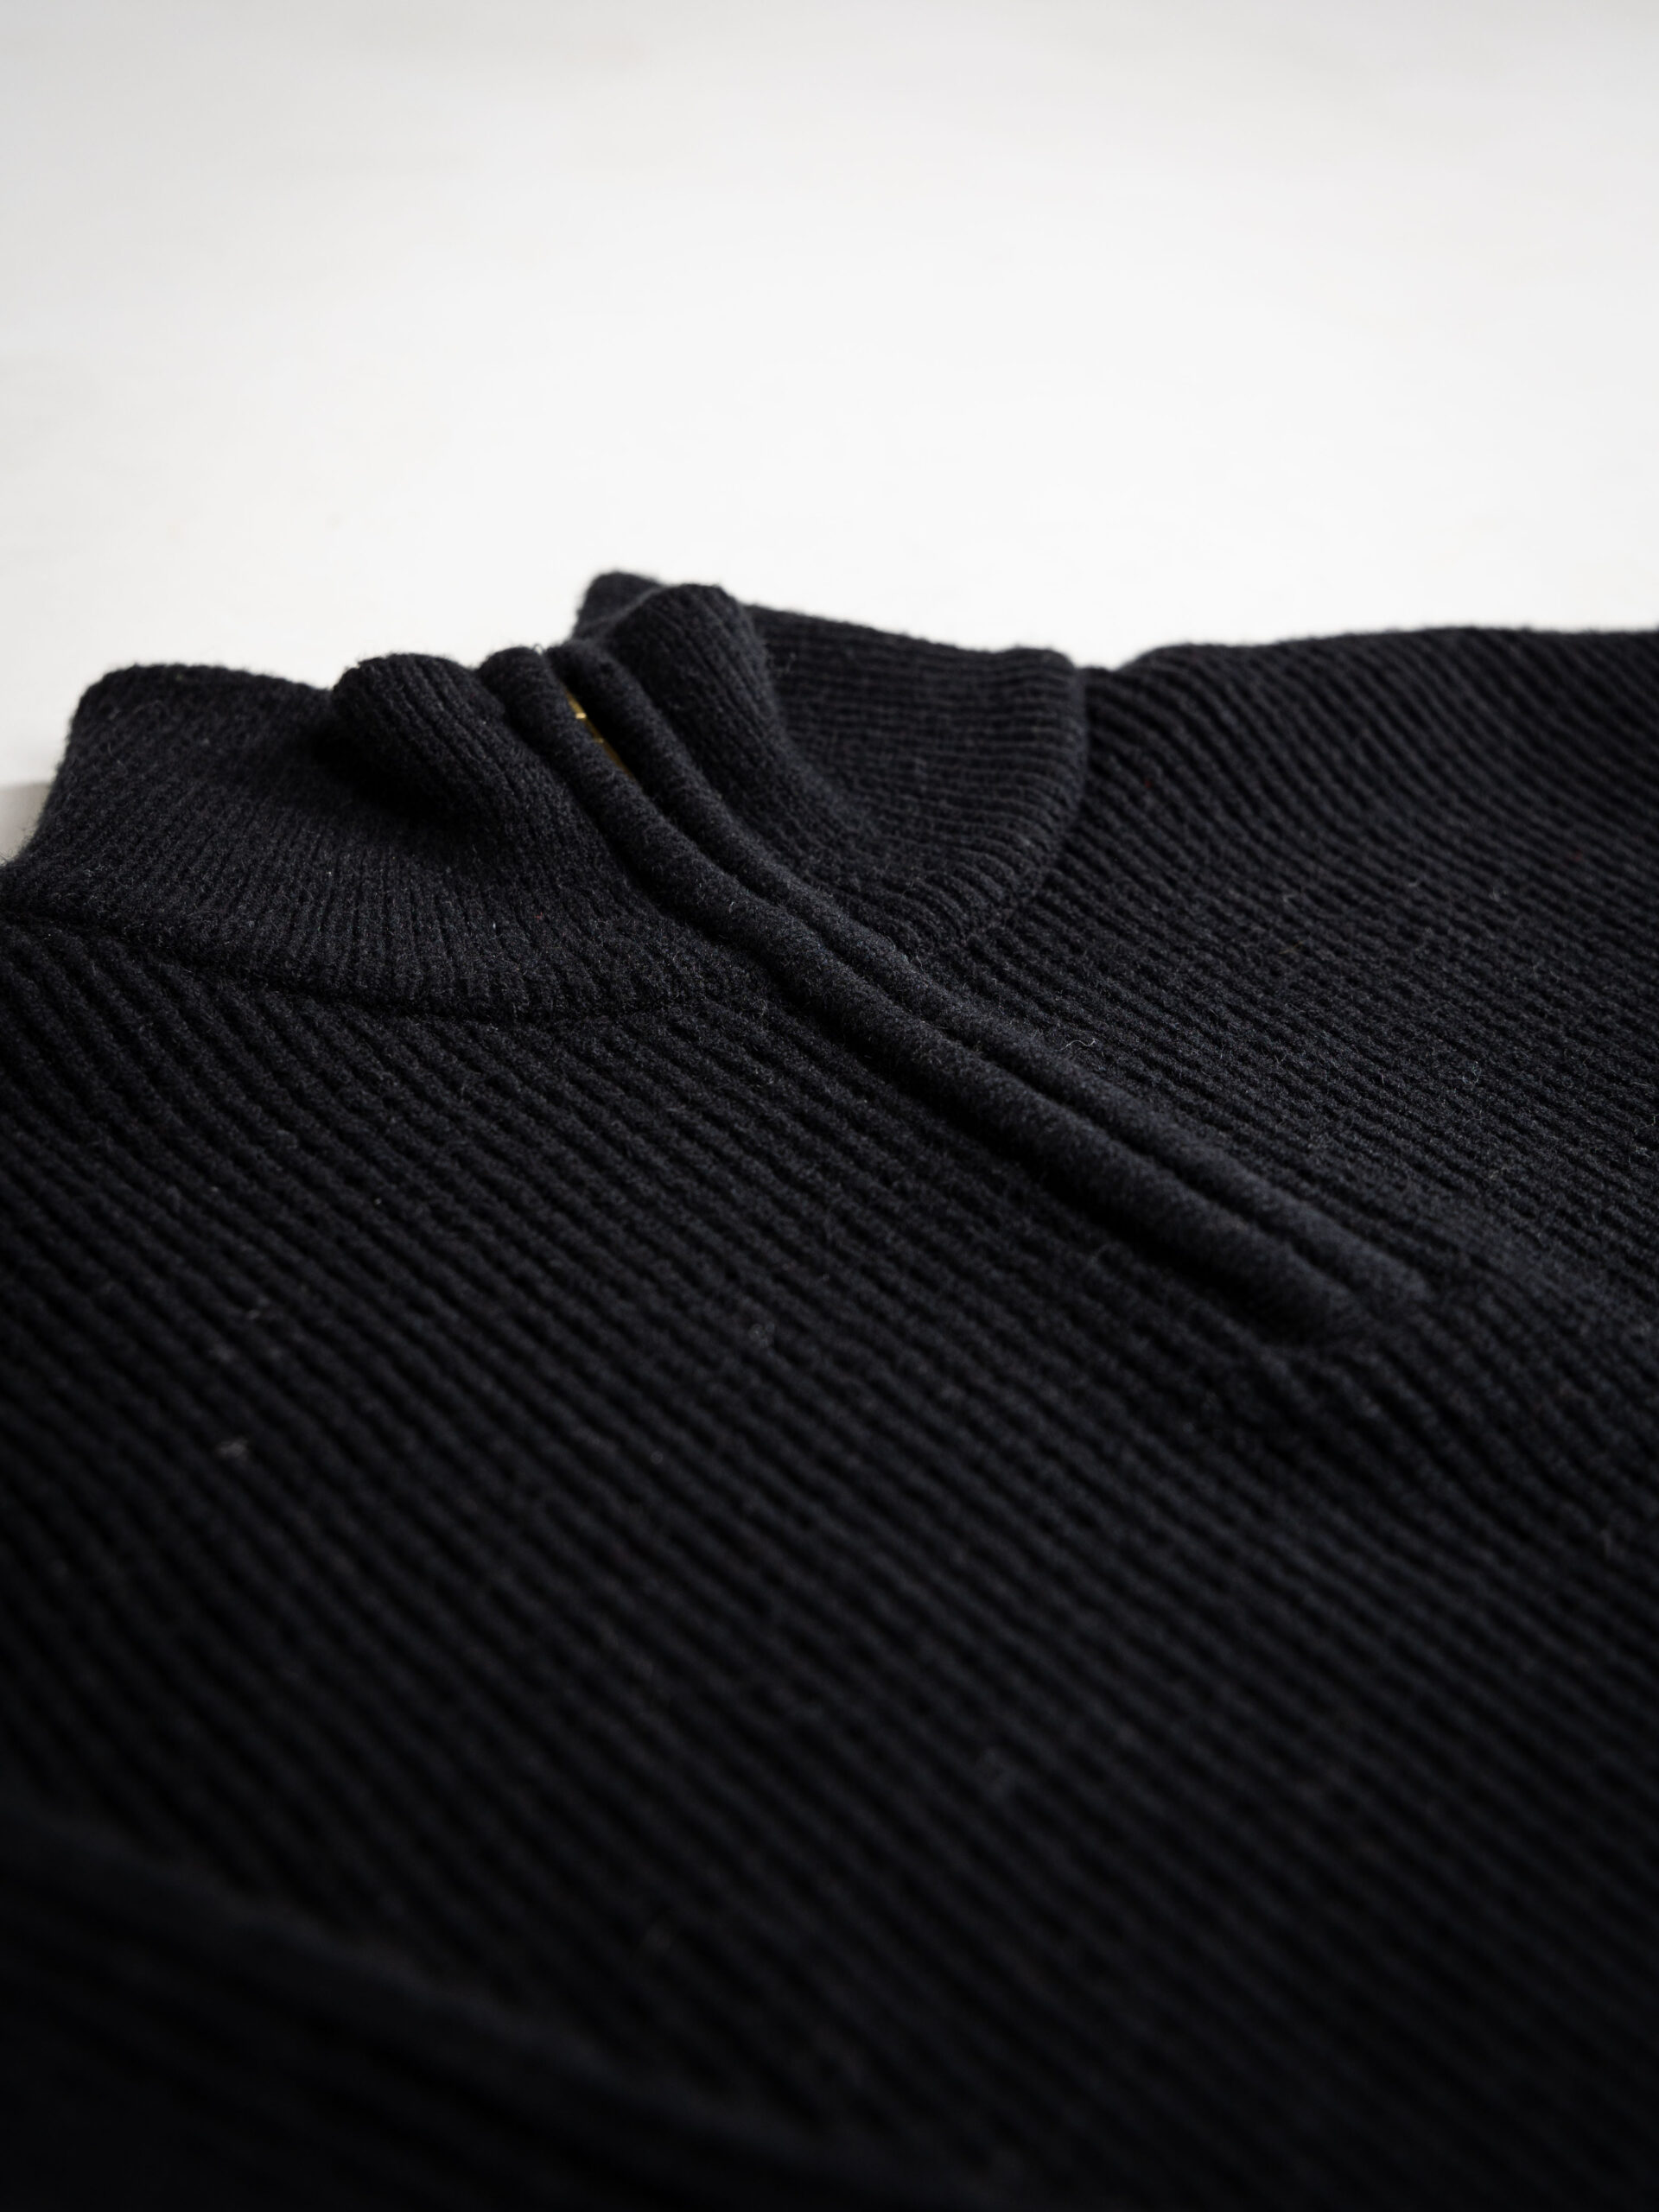 Black Knit Zipper 1608 WEAR